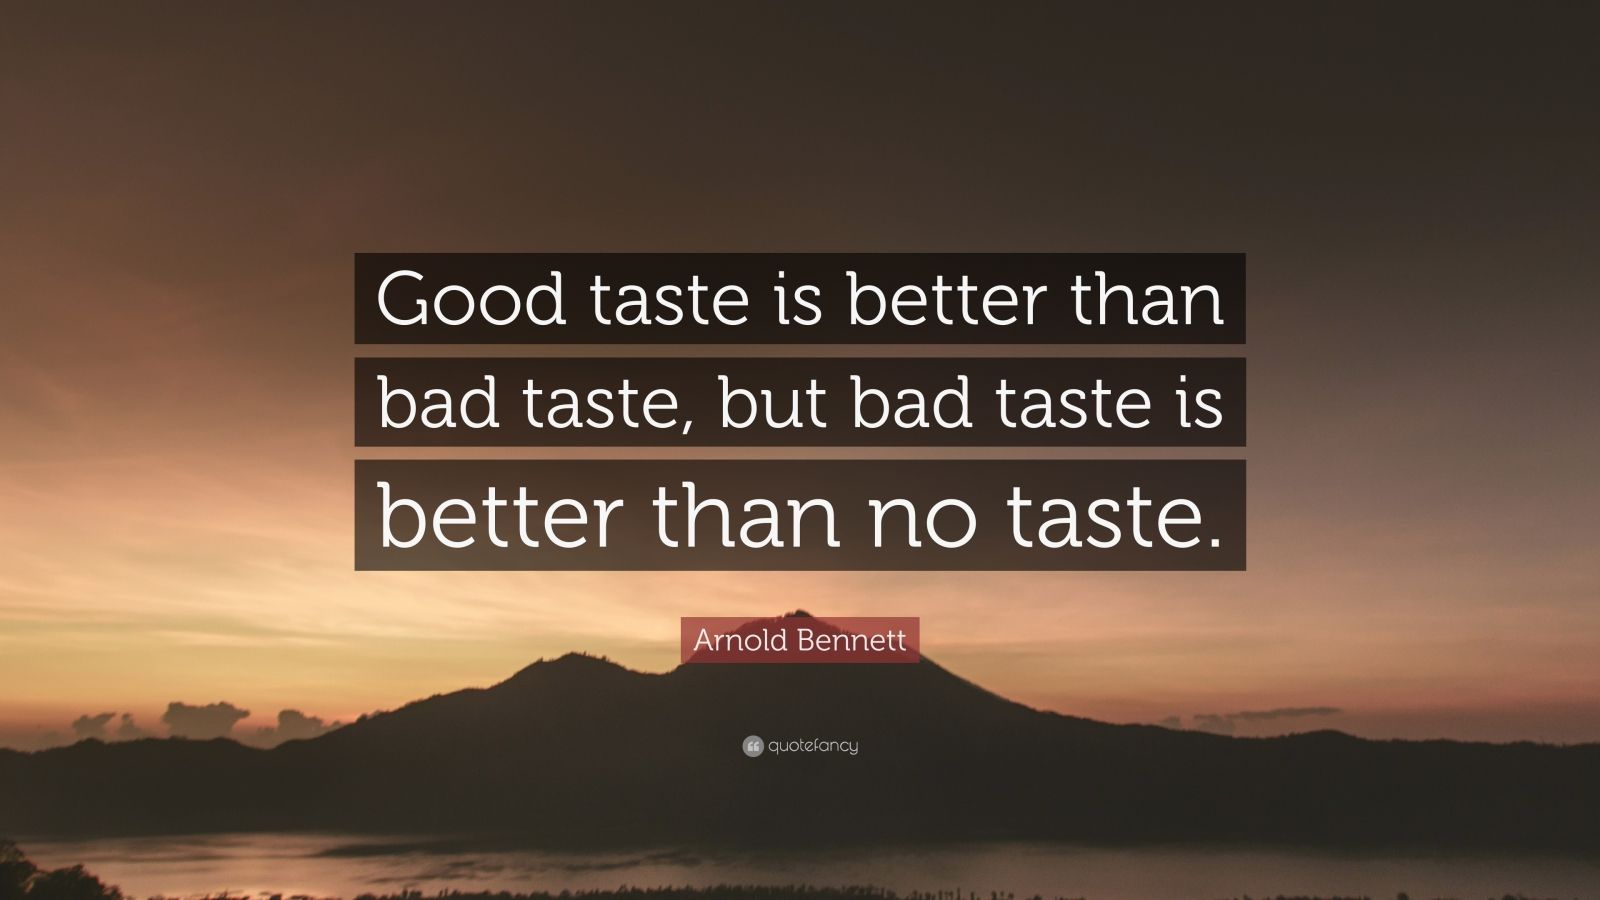 Arnold Bennett Quote: “Good taste is better than bad taste, but bad